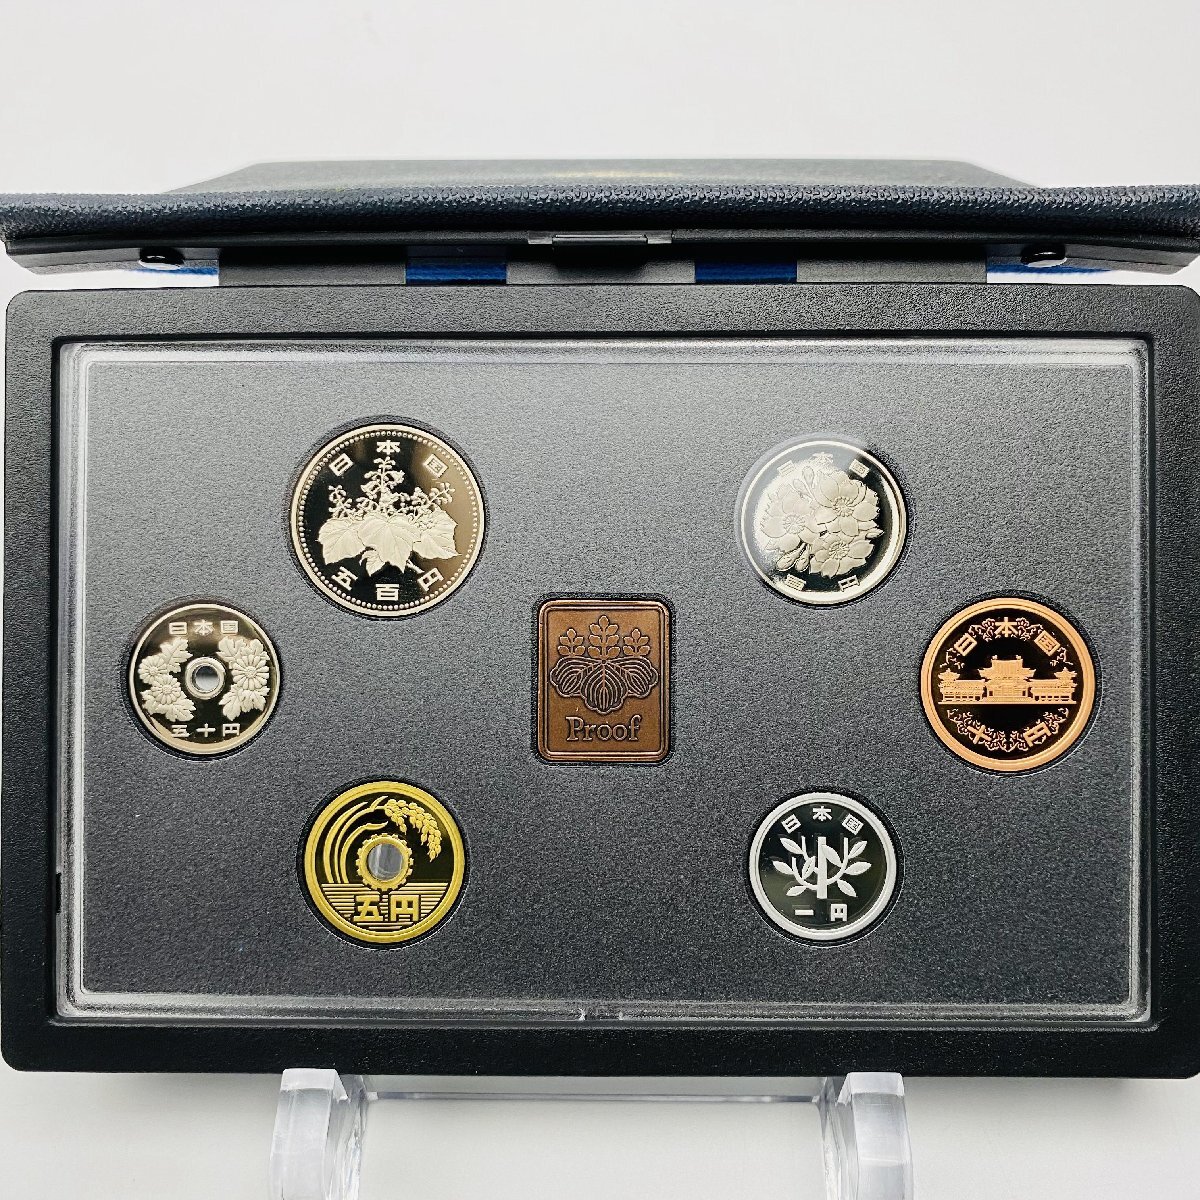 1999年 平成11年 通常プルーフ貨幣セット 額面666円 年銘板有 全揃い 記念硬貨 記念貨幣 貨幣組合 日本円 限定貨幣 コレクション P1999の画像2